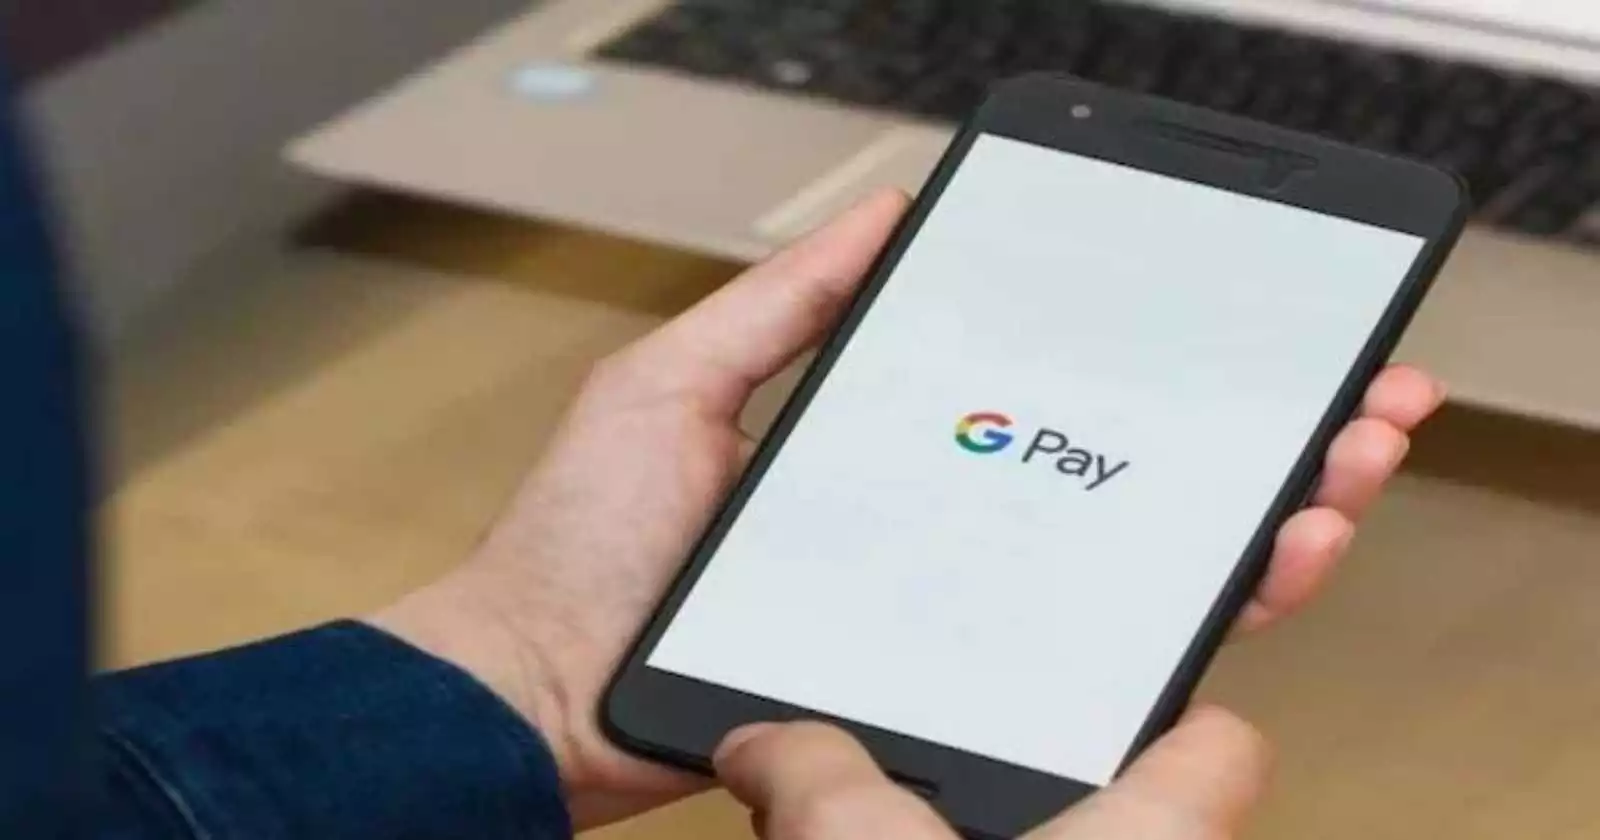 Bank Google Pay